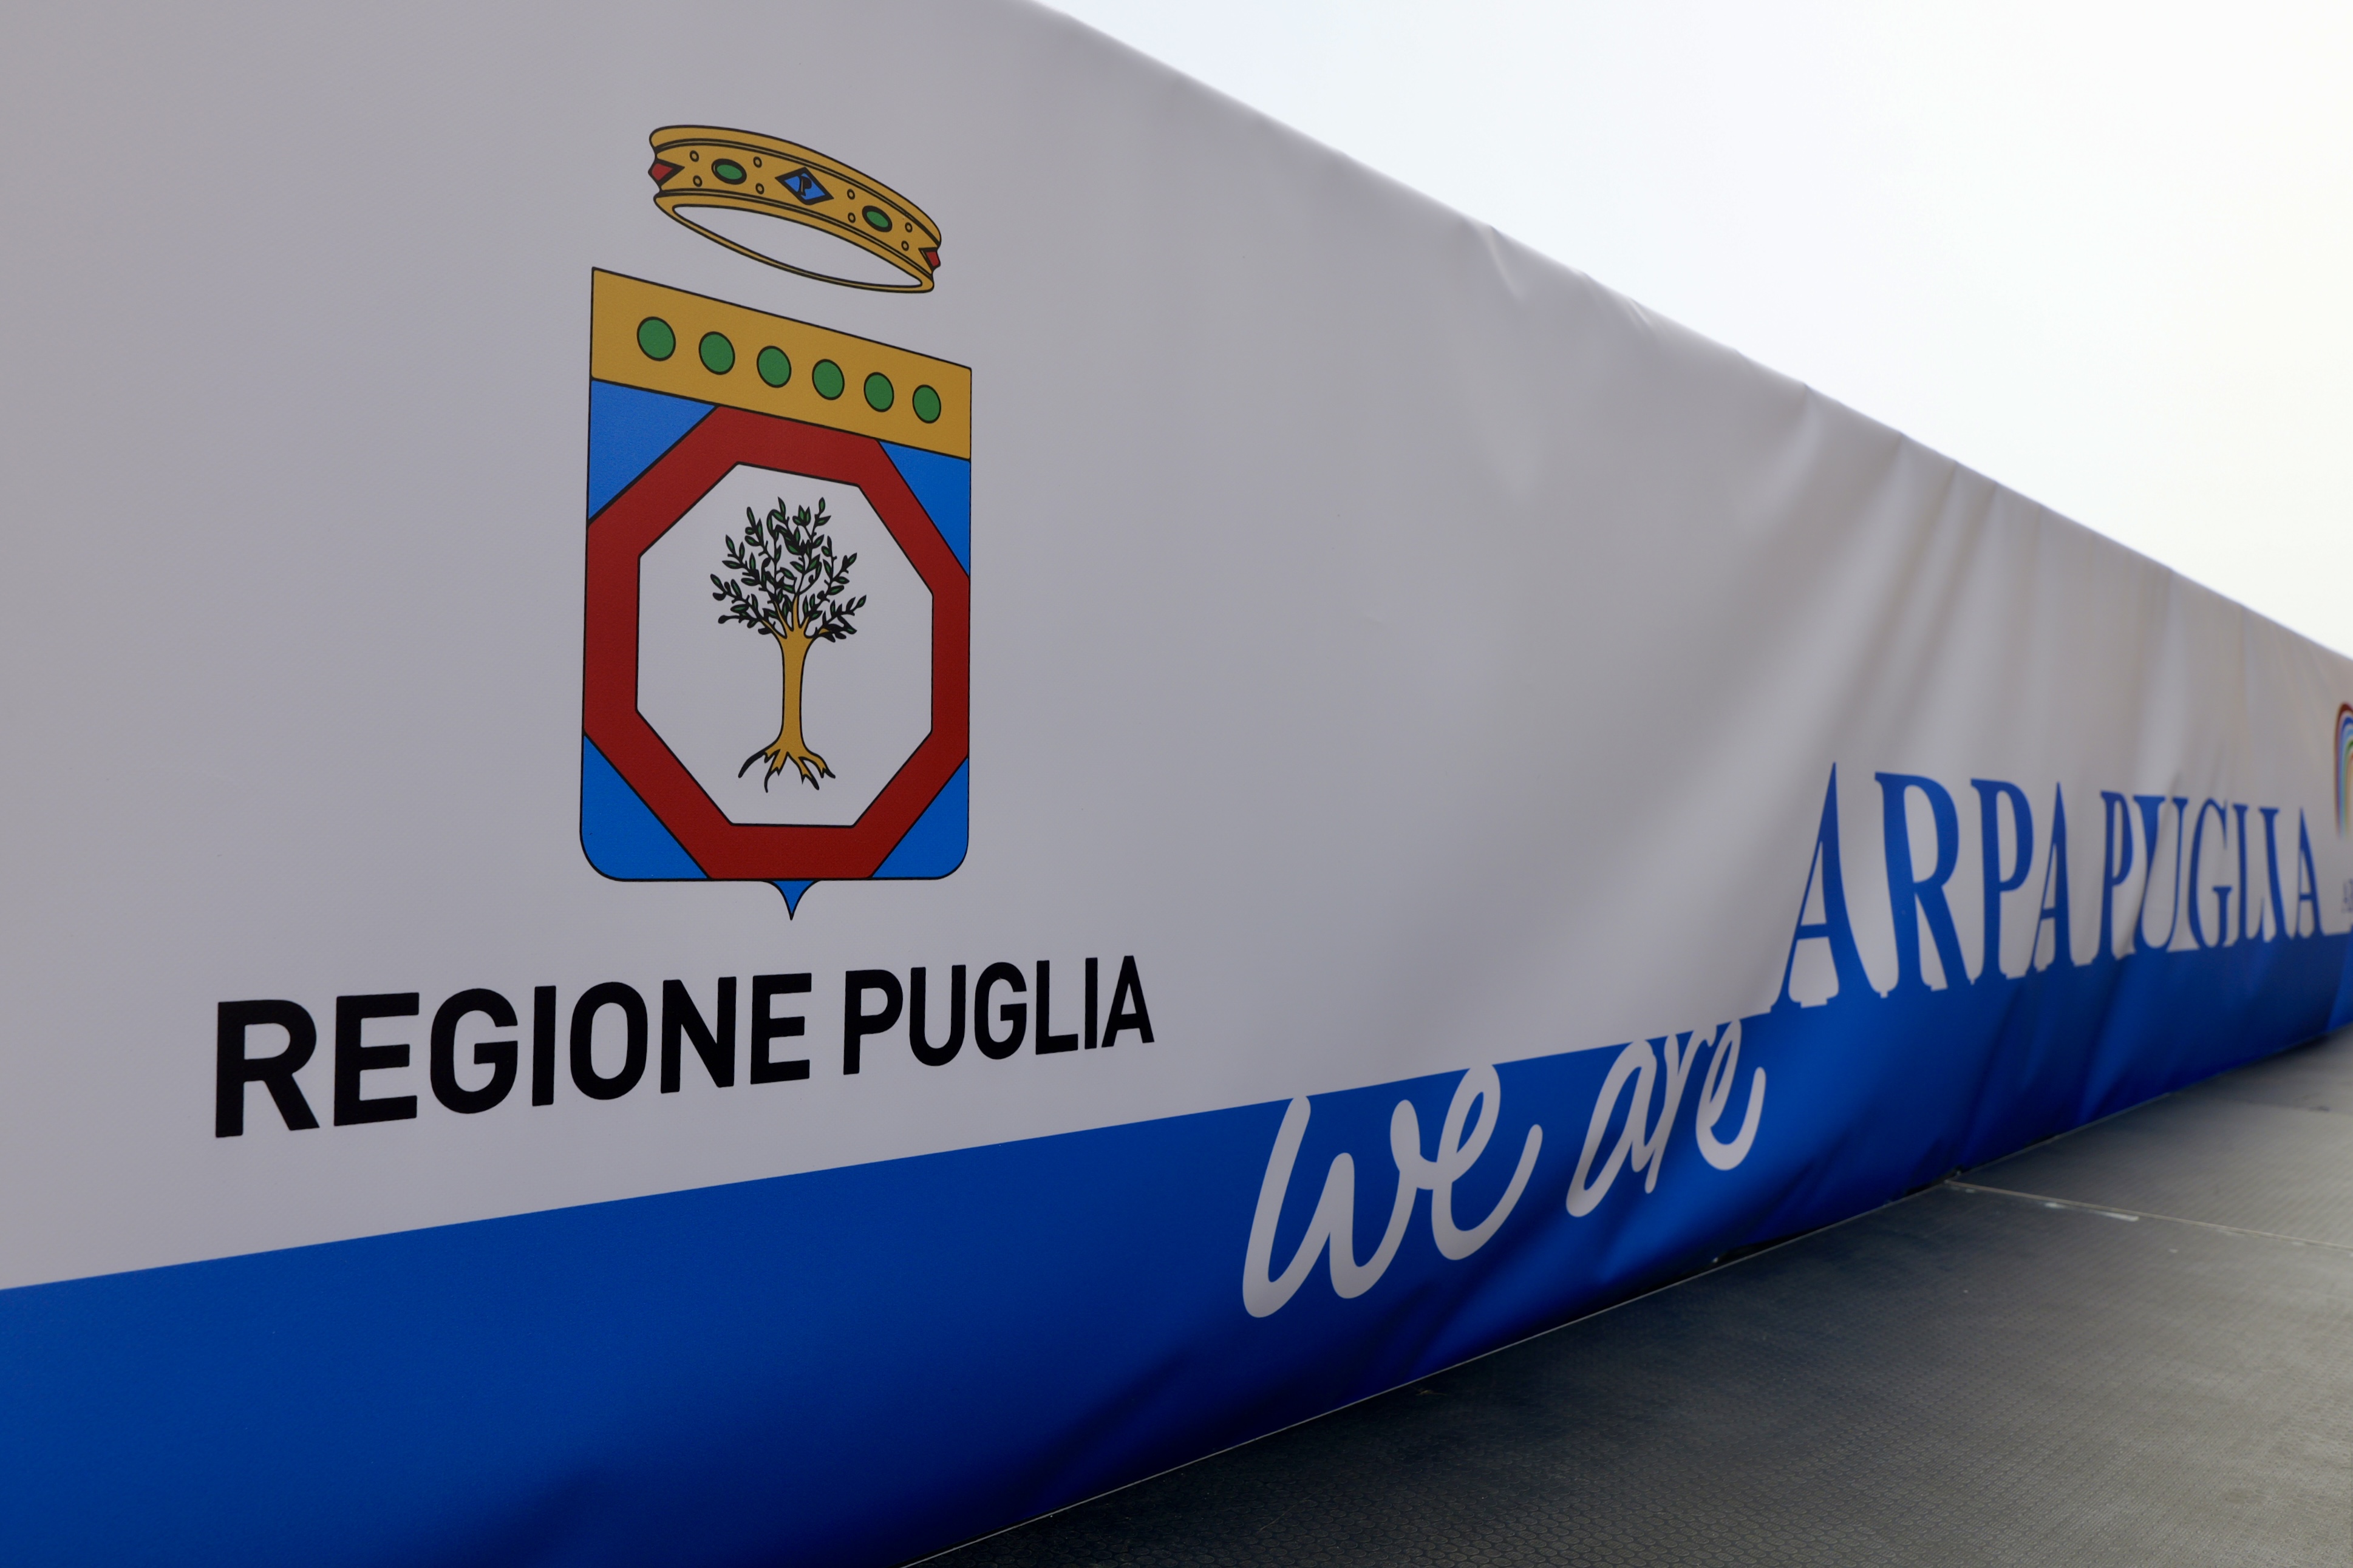 Galleria Puglia prima in Italia per la qualità delle acque di balneazione per il quarto anno consecutivo secondo i dati del Sistema nazionale per la protezione dell’ambiente - Diapositiva 8 di 9